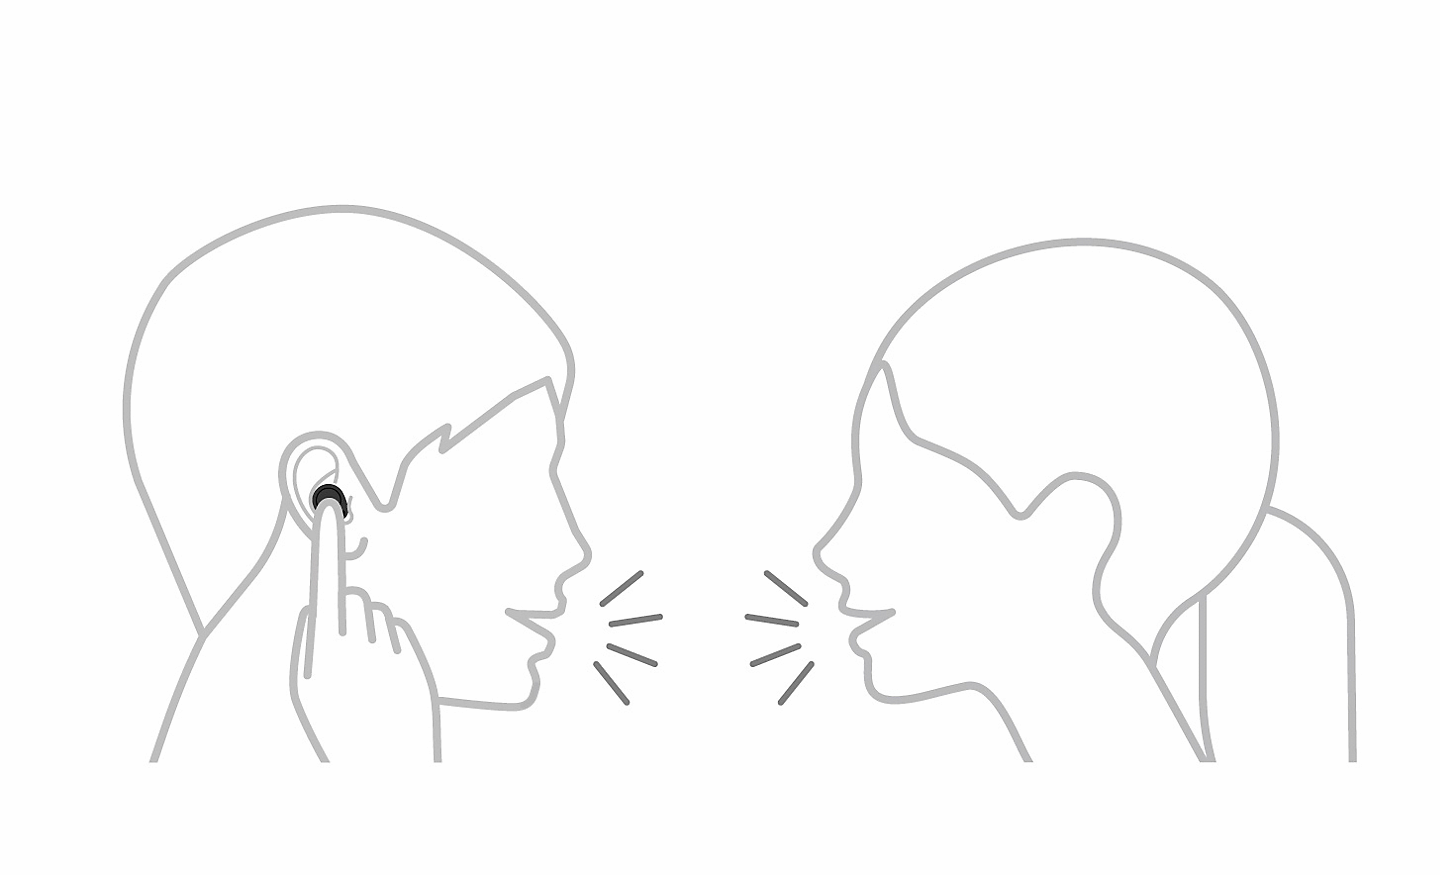 رسم خطي لشخصين يتحدثان، أحدهما يلمس سماعة الرأس بإصبع واحد وتوجد أيقونة إيقاف مؤقت في أعلى اليسار